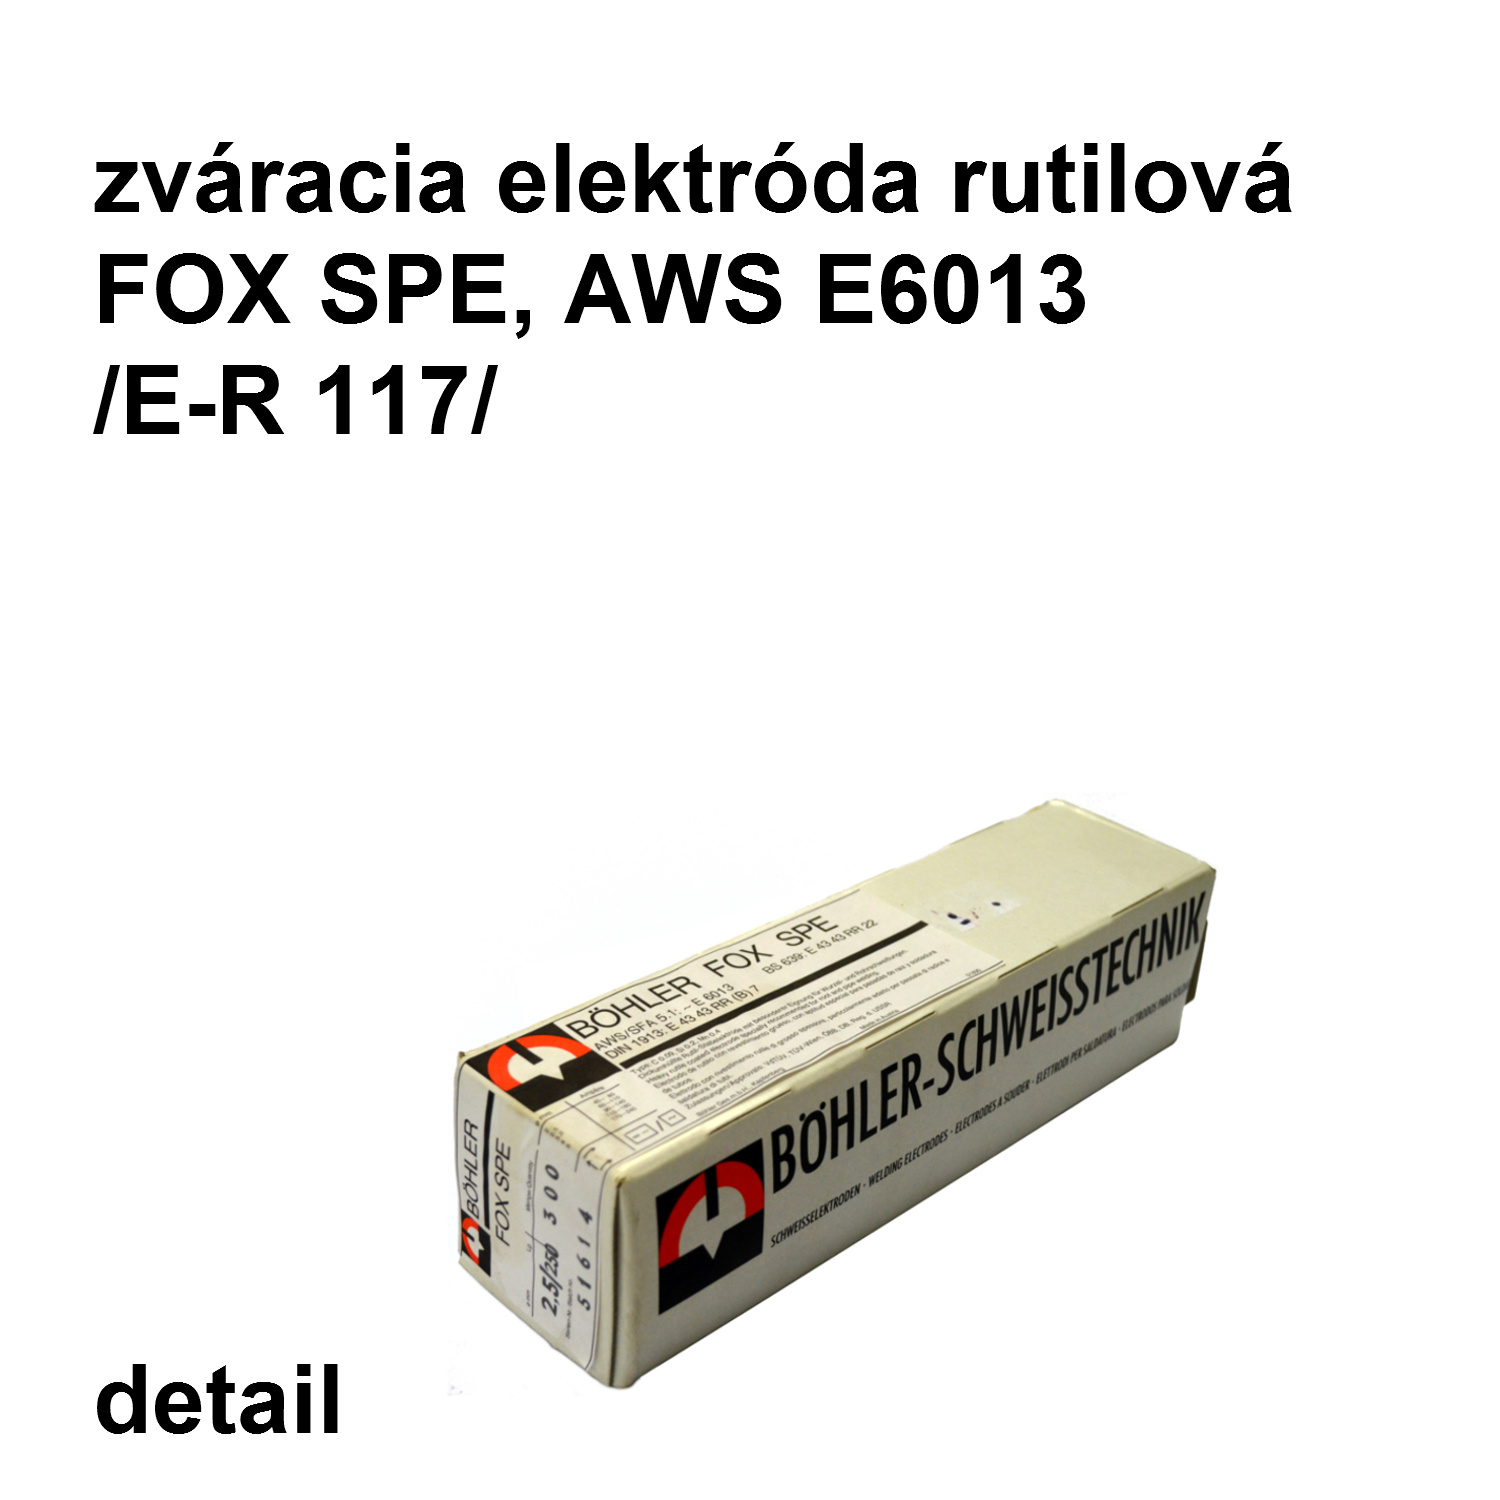 zváracia elektróda FOX SPE  2,5/250 mm, AWS E6013 /E-R117/ rutilová elektróda   